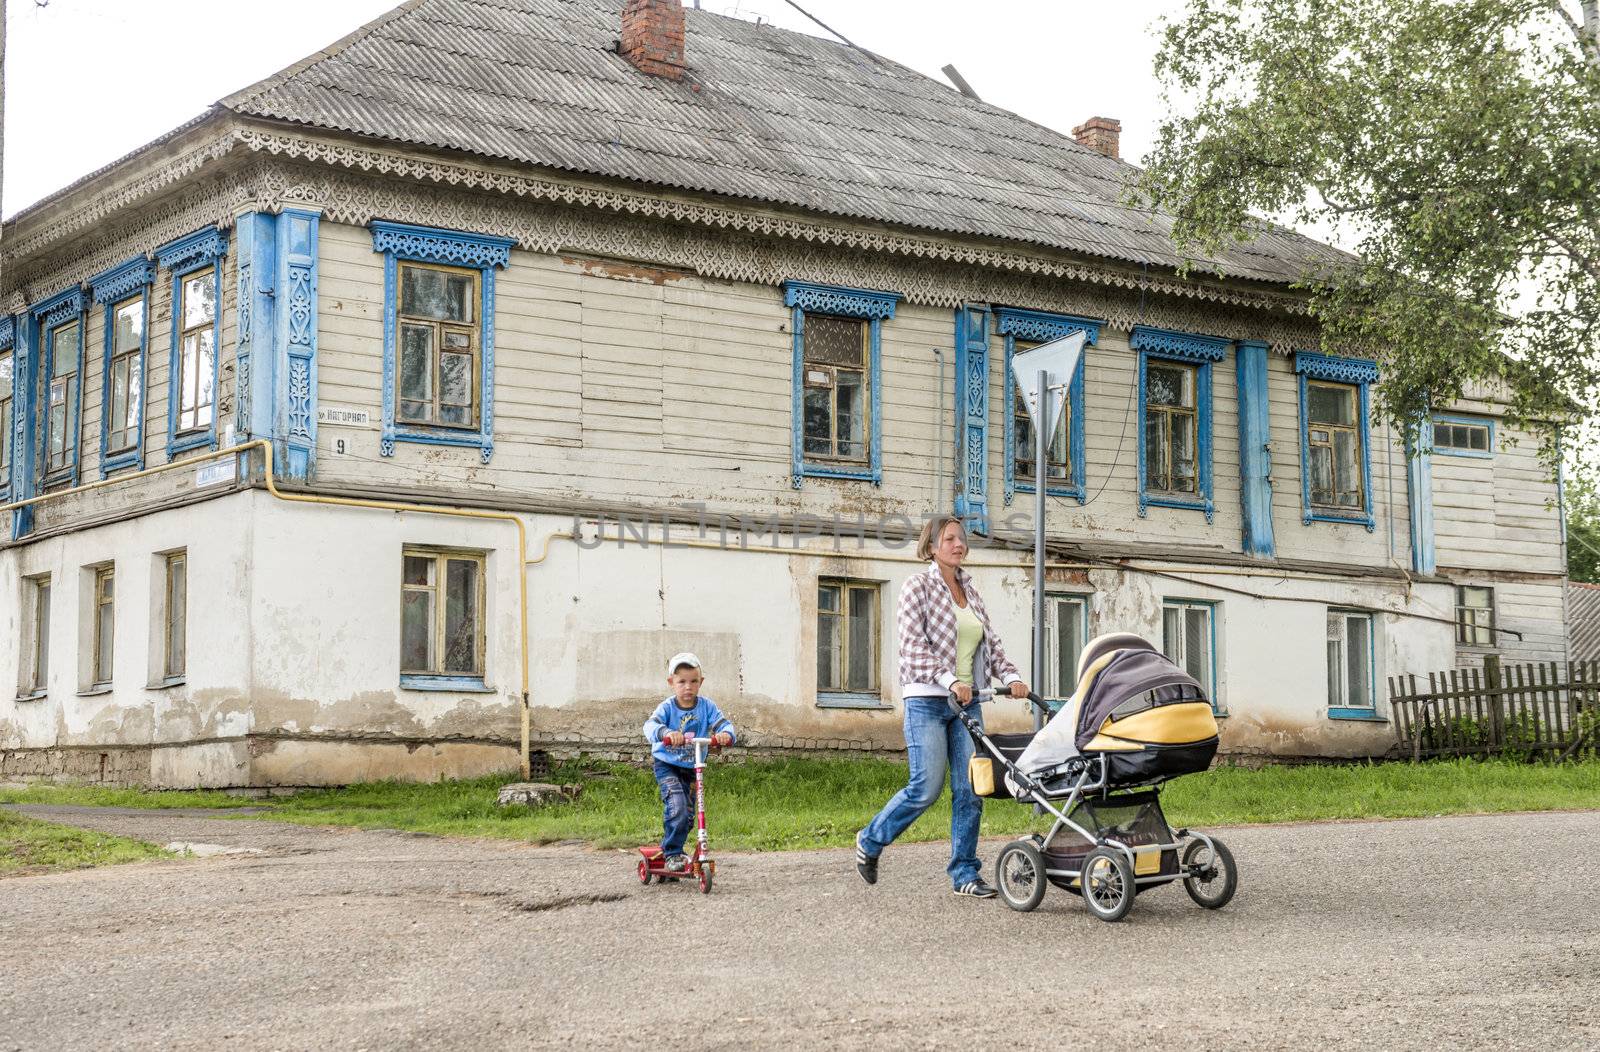 Life scene in the Russian village. Taken in Myshkin village, Russia on July 2012.